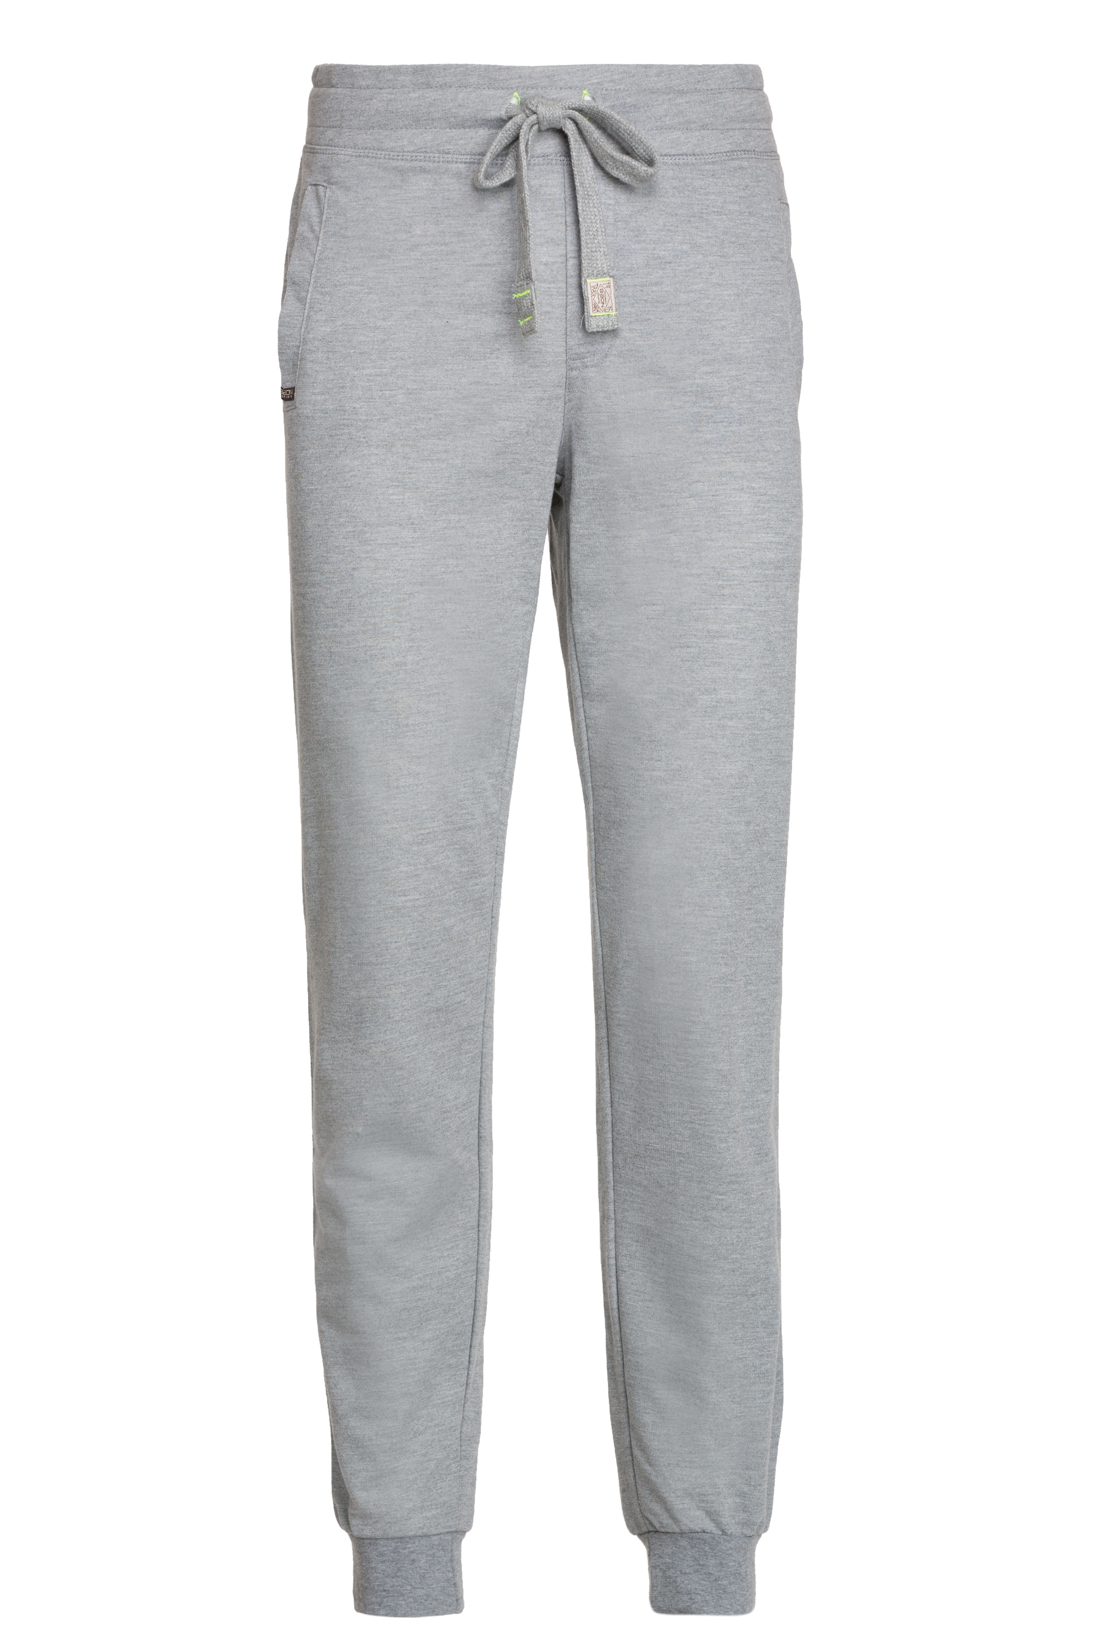 Спортивные брюки с манжетами (арт. baon B797301), размер XL, цвет cold grey melange#серый Спортивные брюки с манжетами (арт. baon B797301) - фото 4